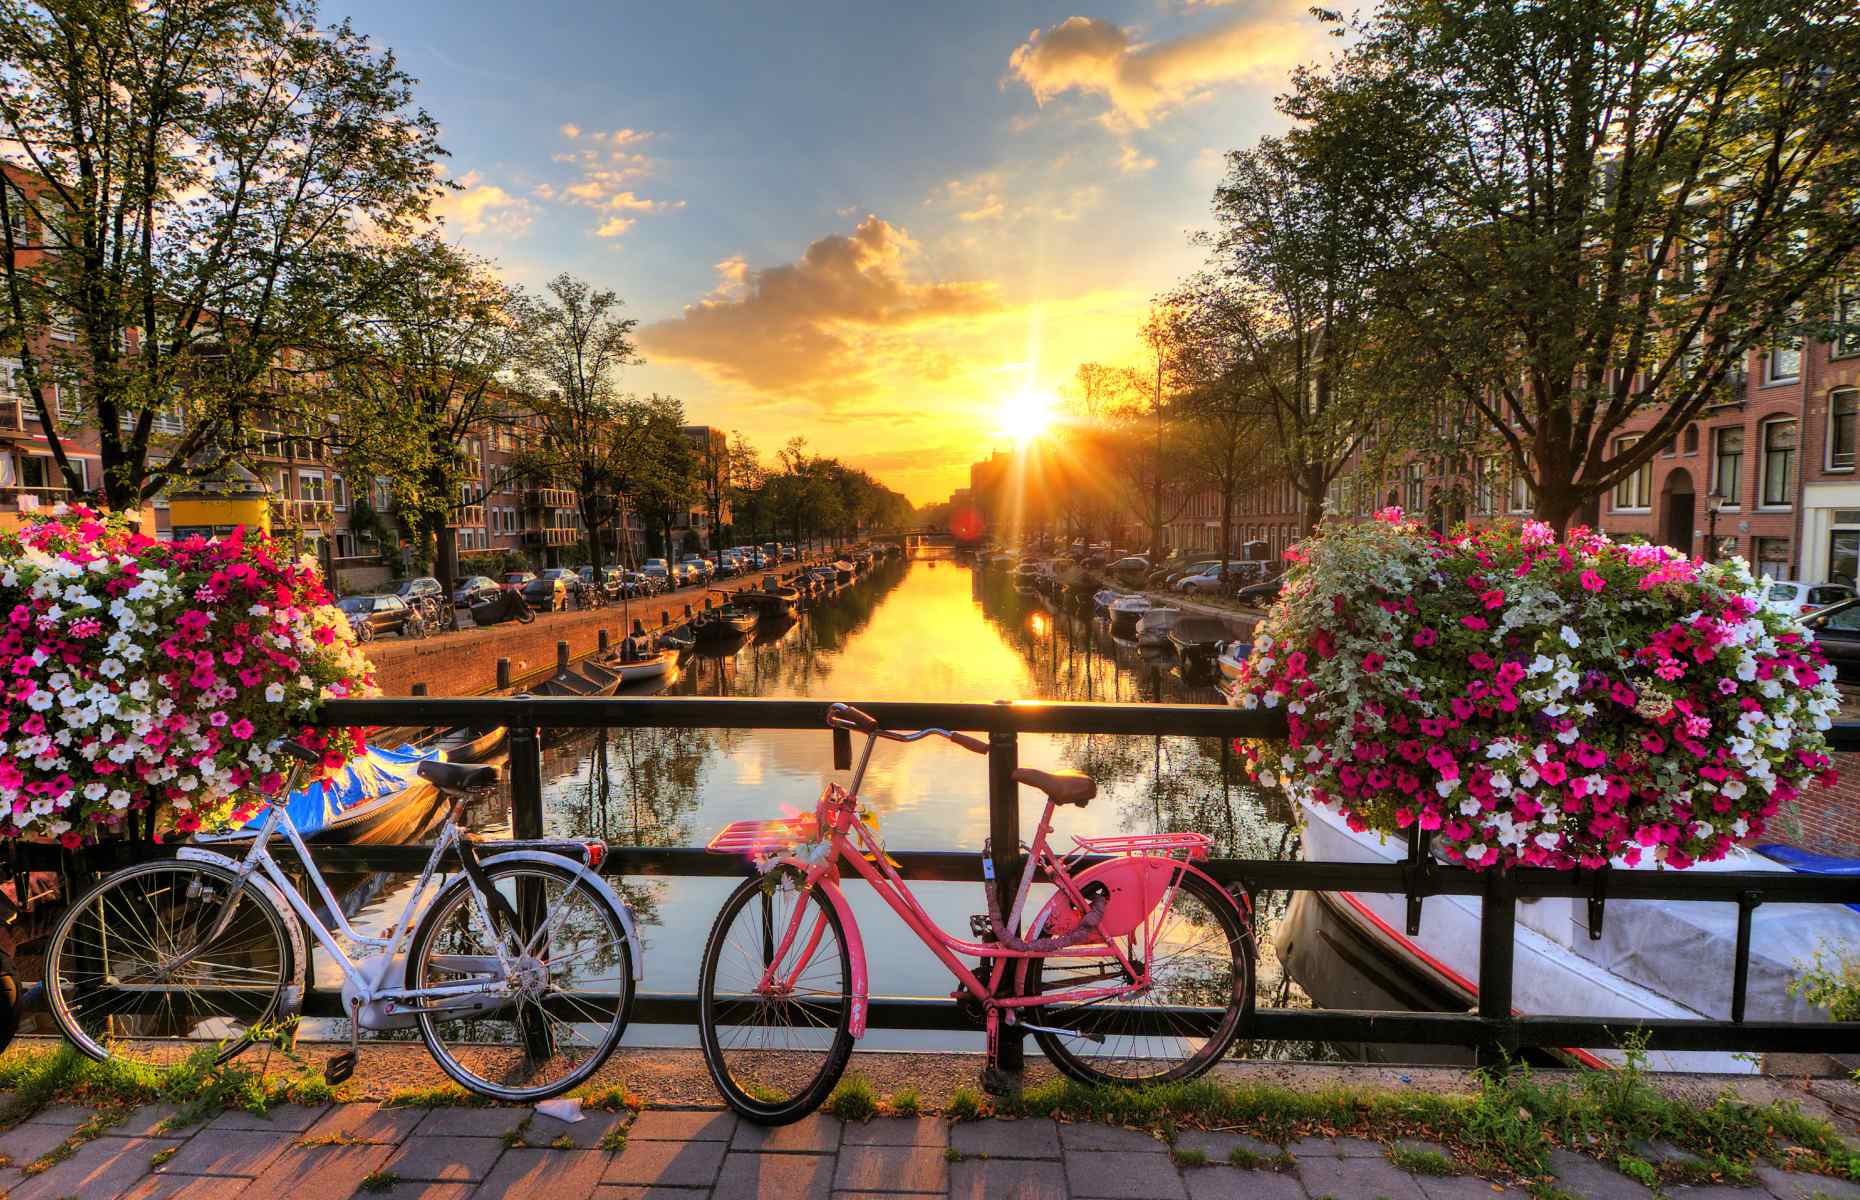 Sunrise in Amsterdam, The Netherlands (Dennis van de Water/Shutterstock)